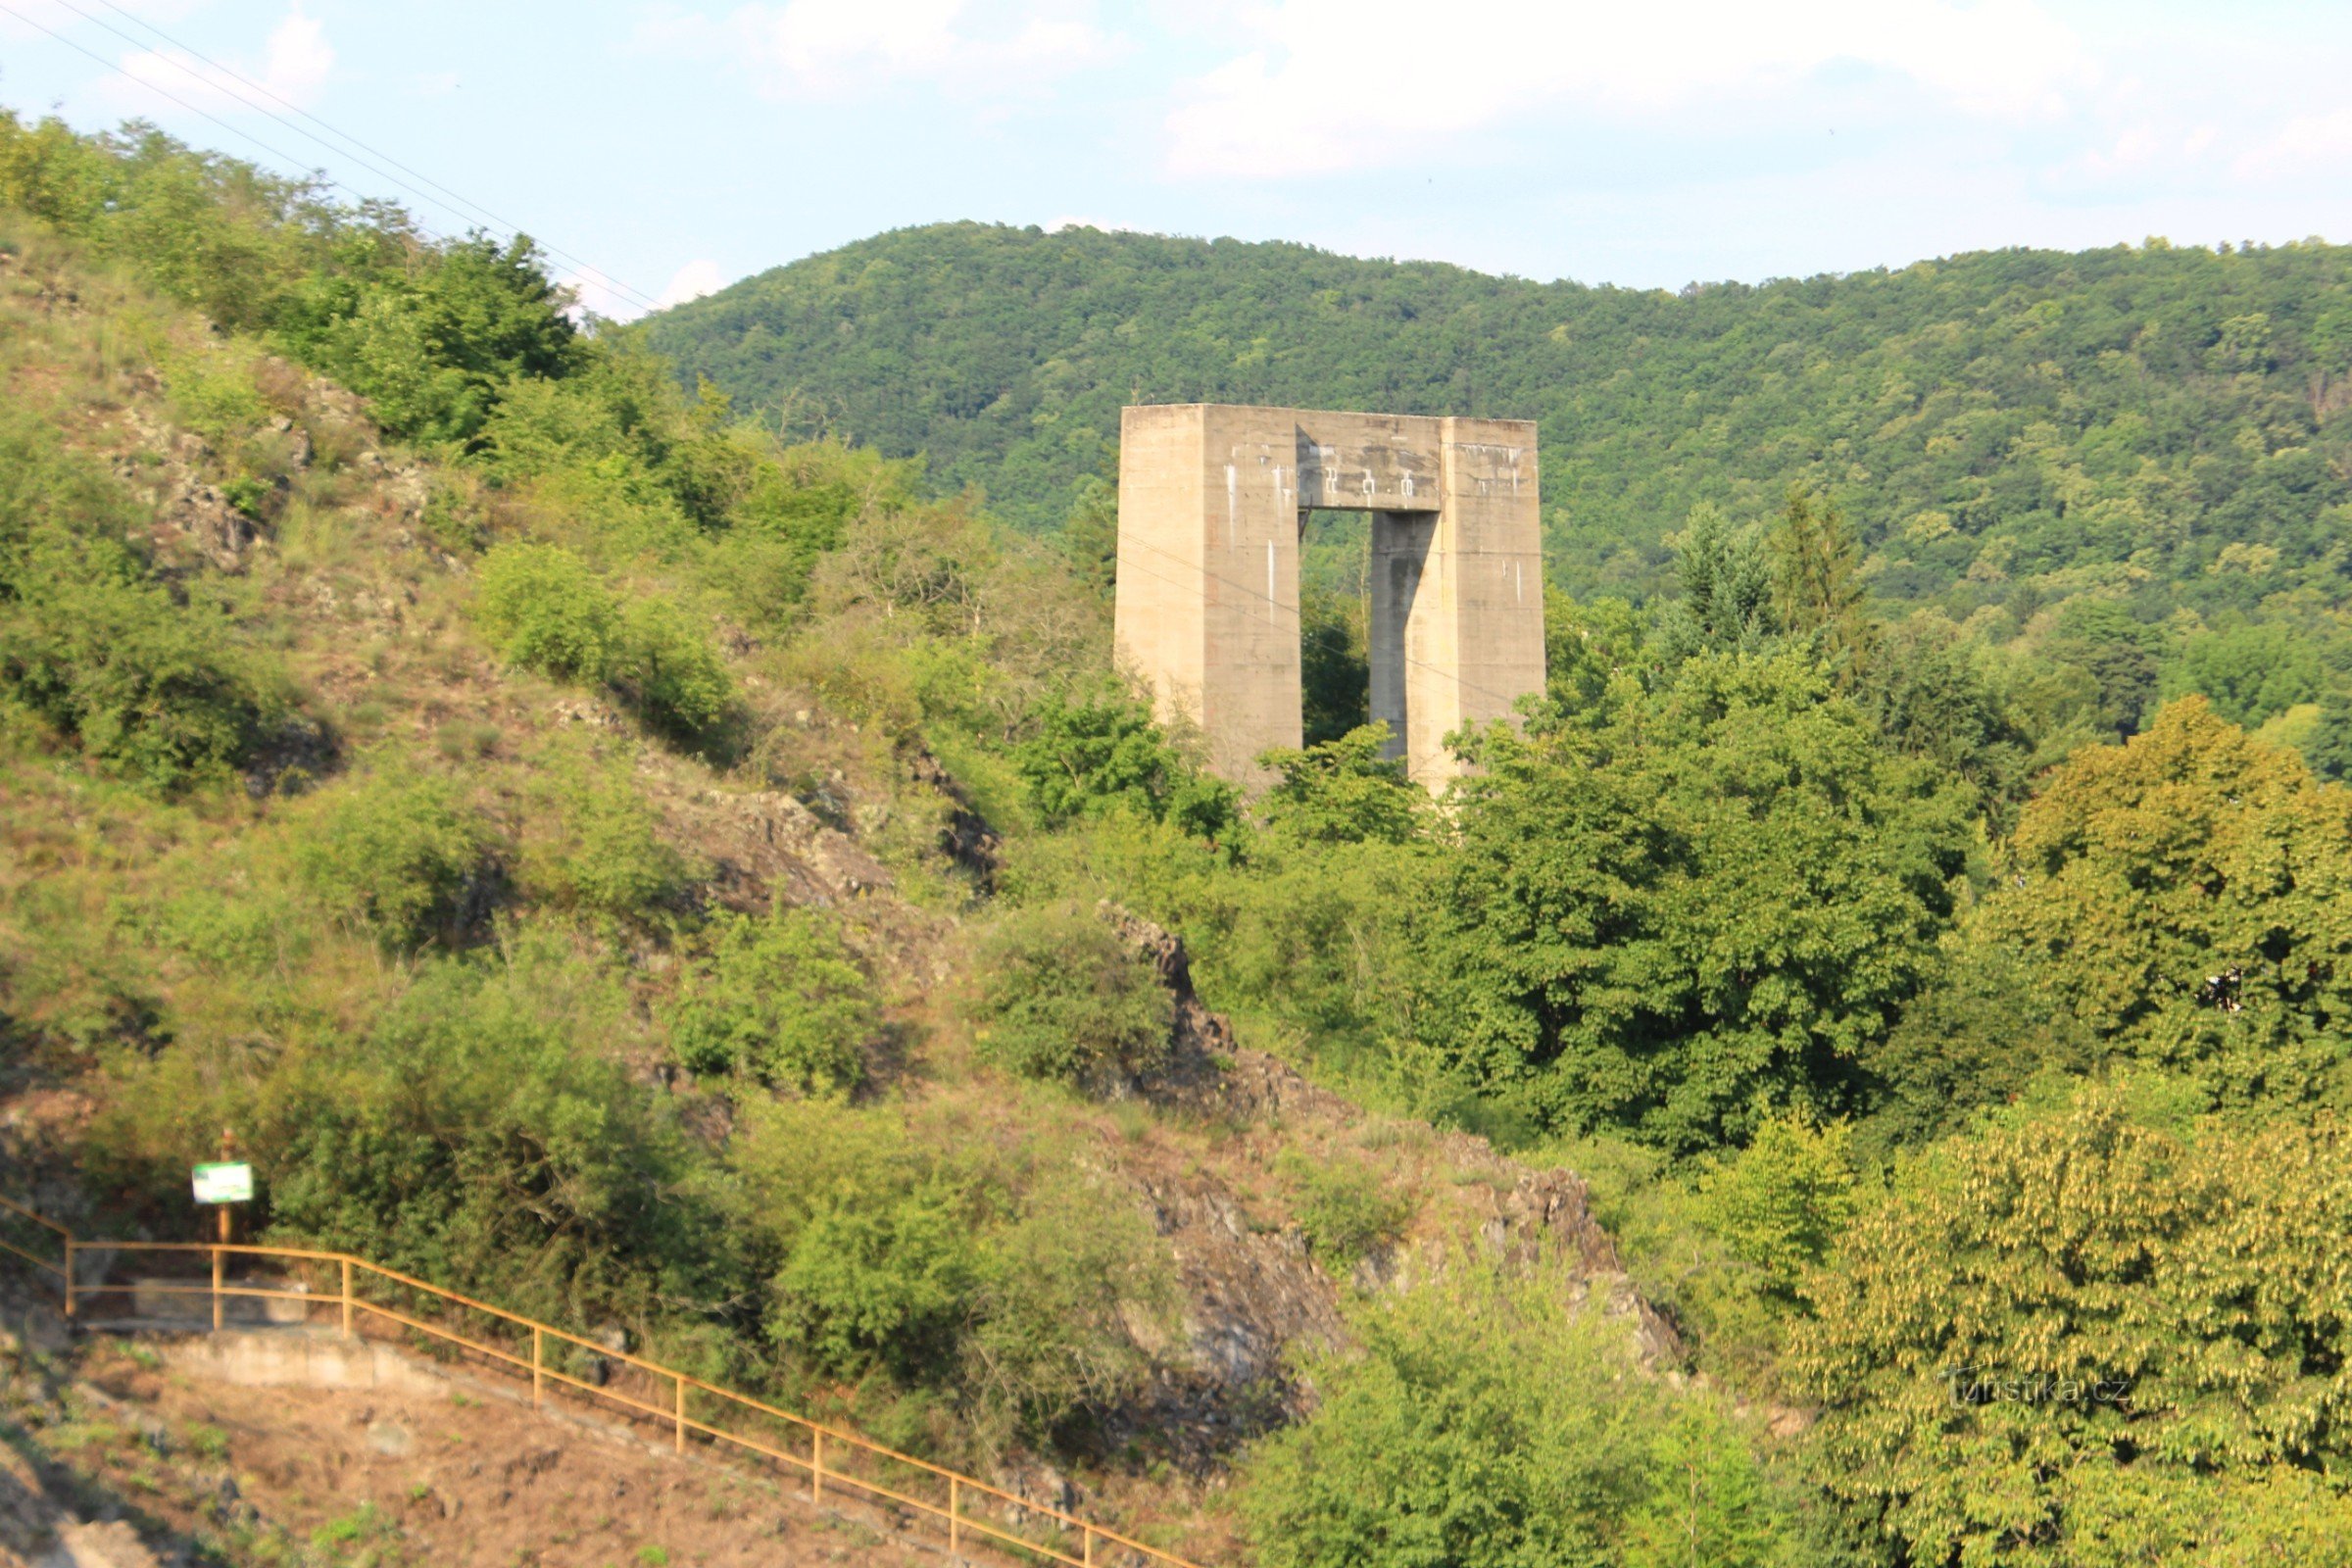 Skalky gần Přehrady - đài tưởng niệm tự nhiên, dốc bờ trái với một cây cột